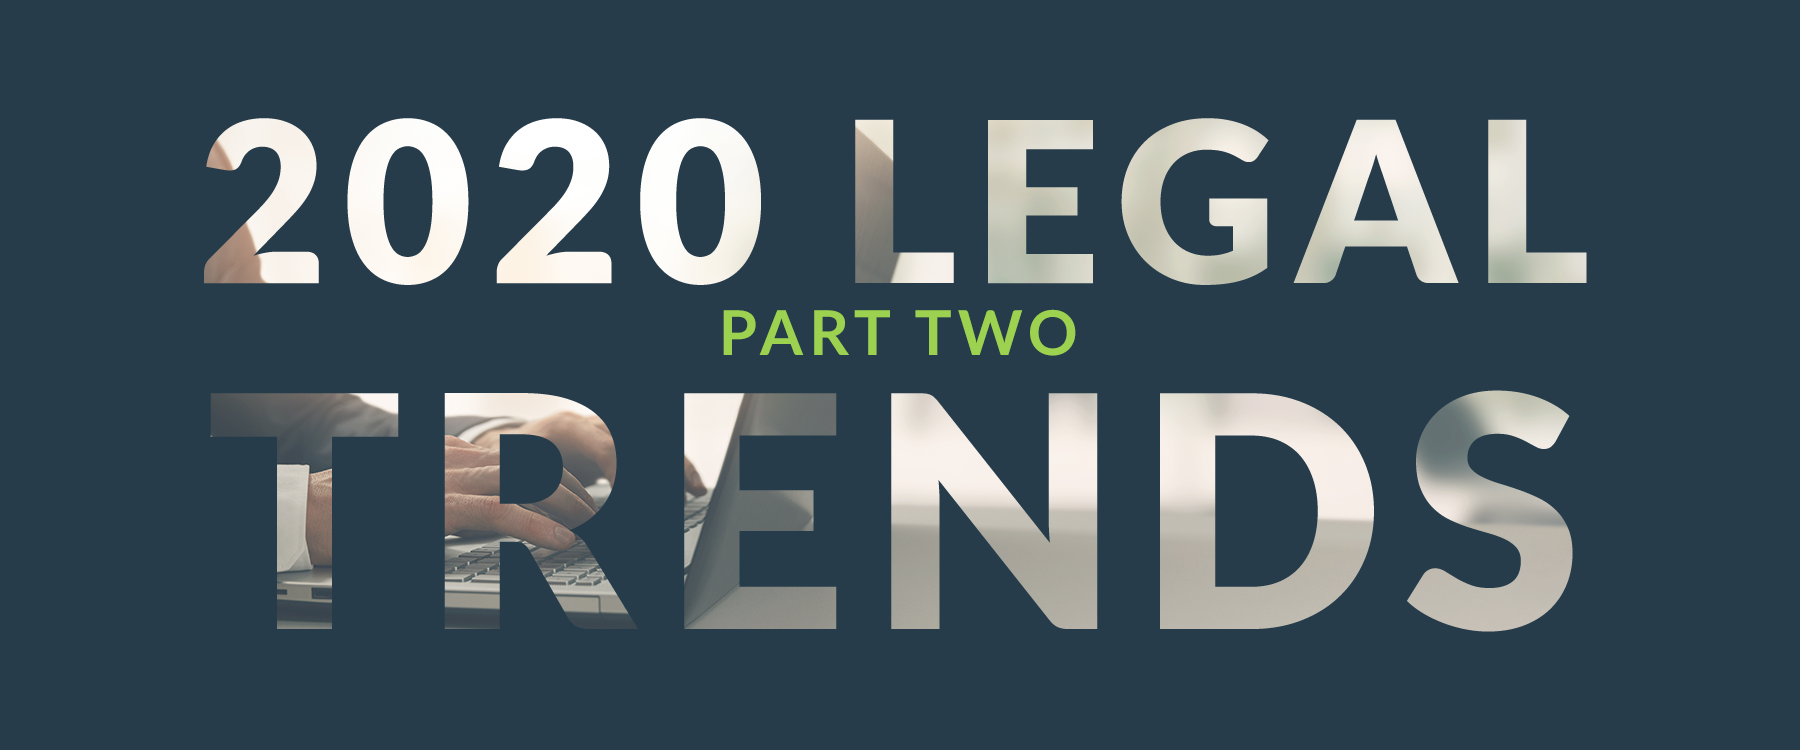 2020 Legal Trends Part 2